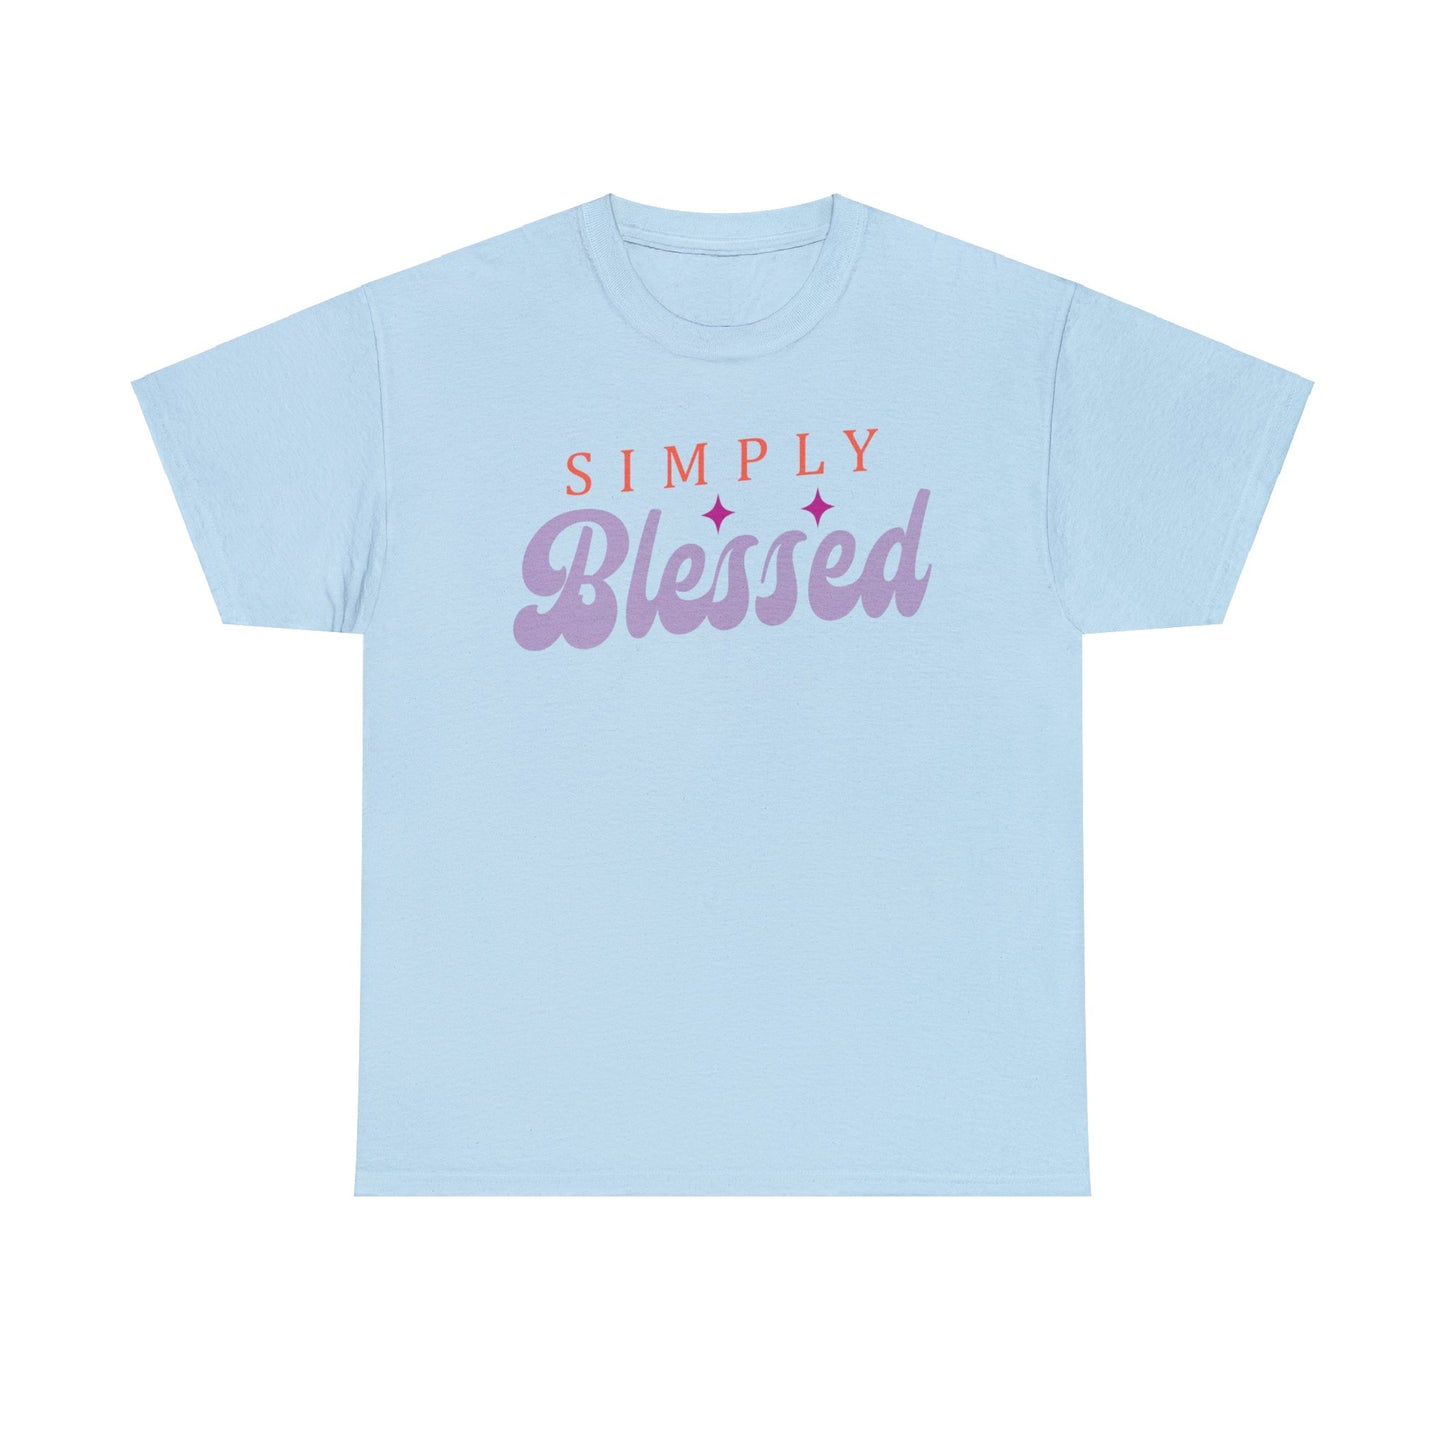 Simply Blessed Shirt, Christian Shirt, Religious Shirt, Faith Tee (Faith-4)